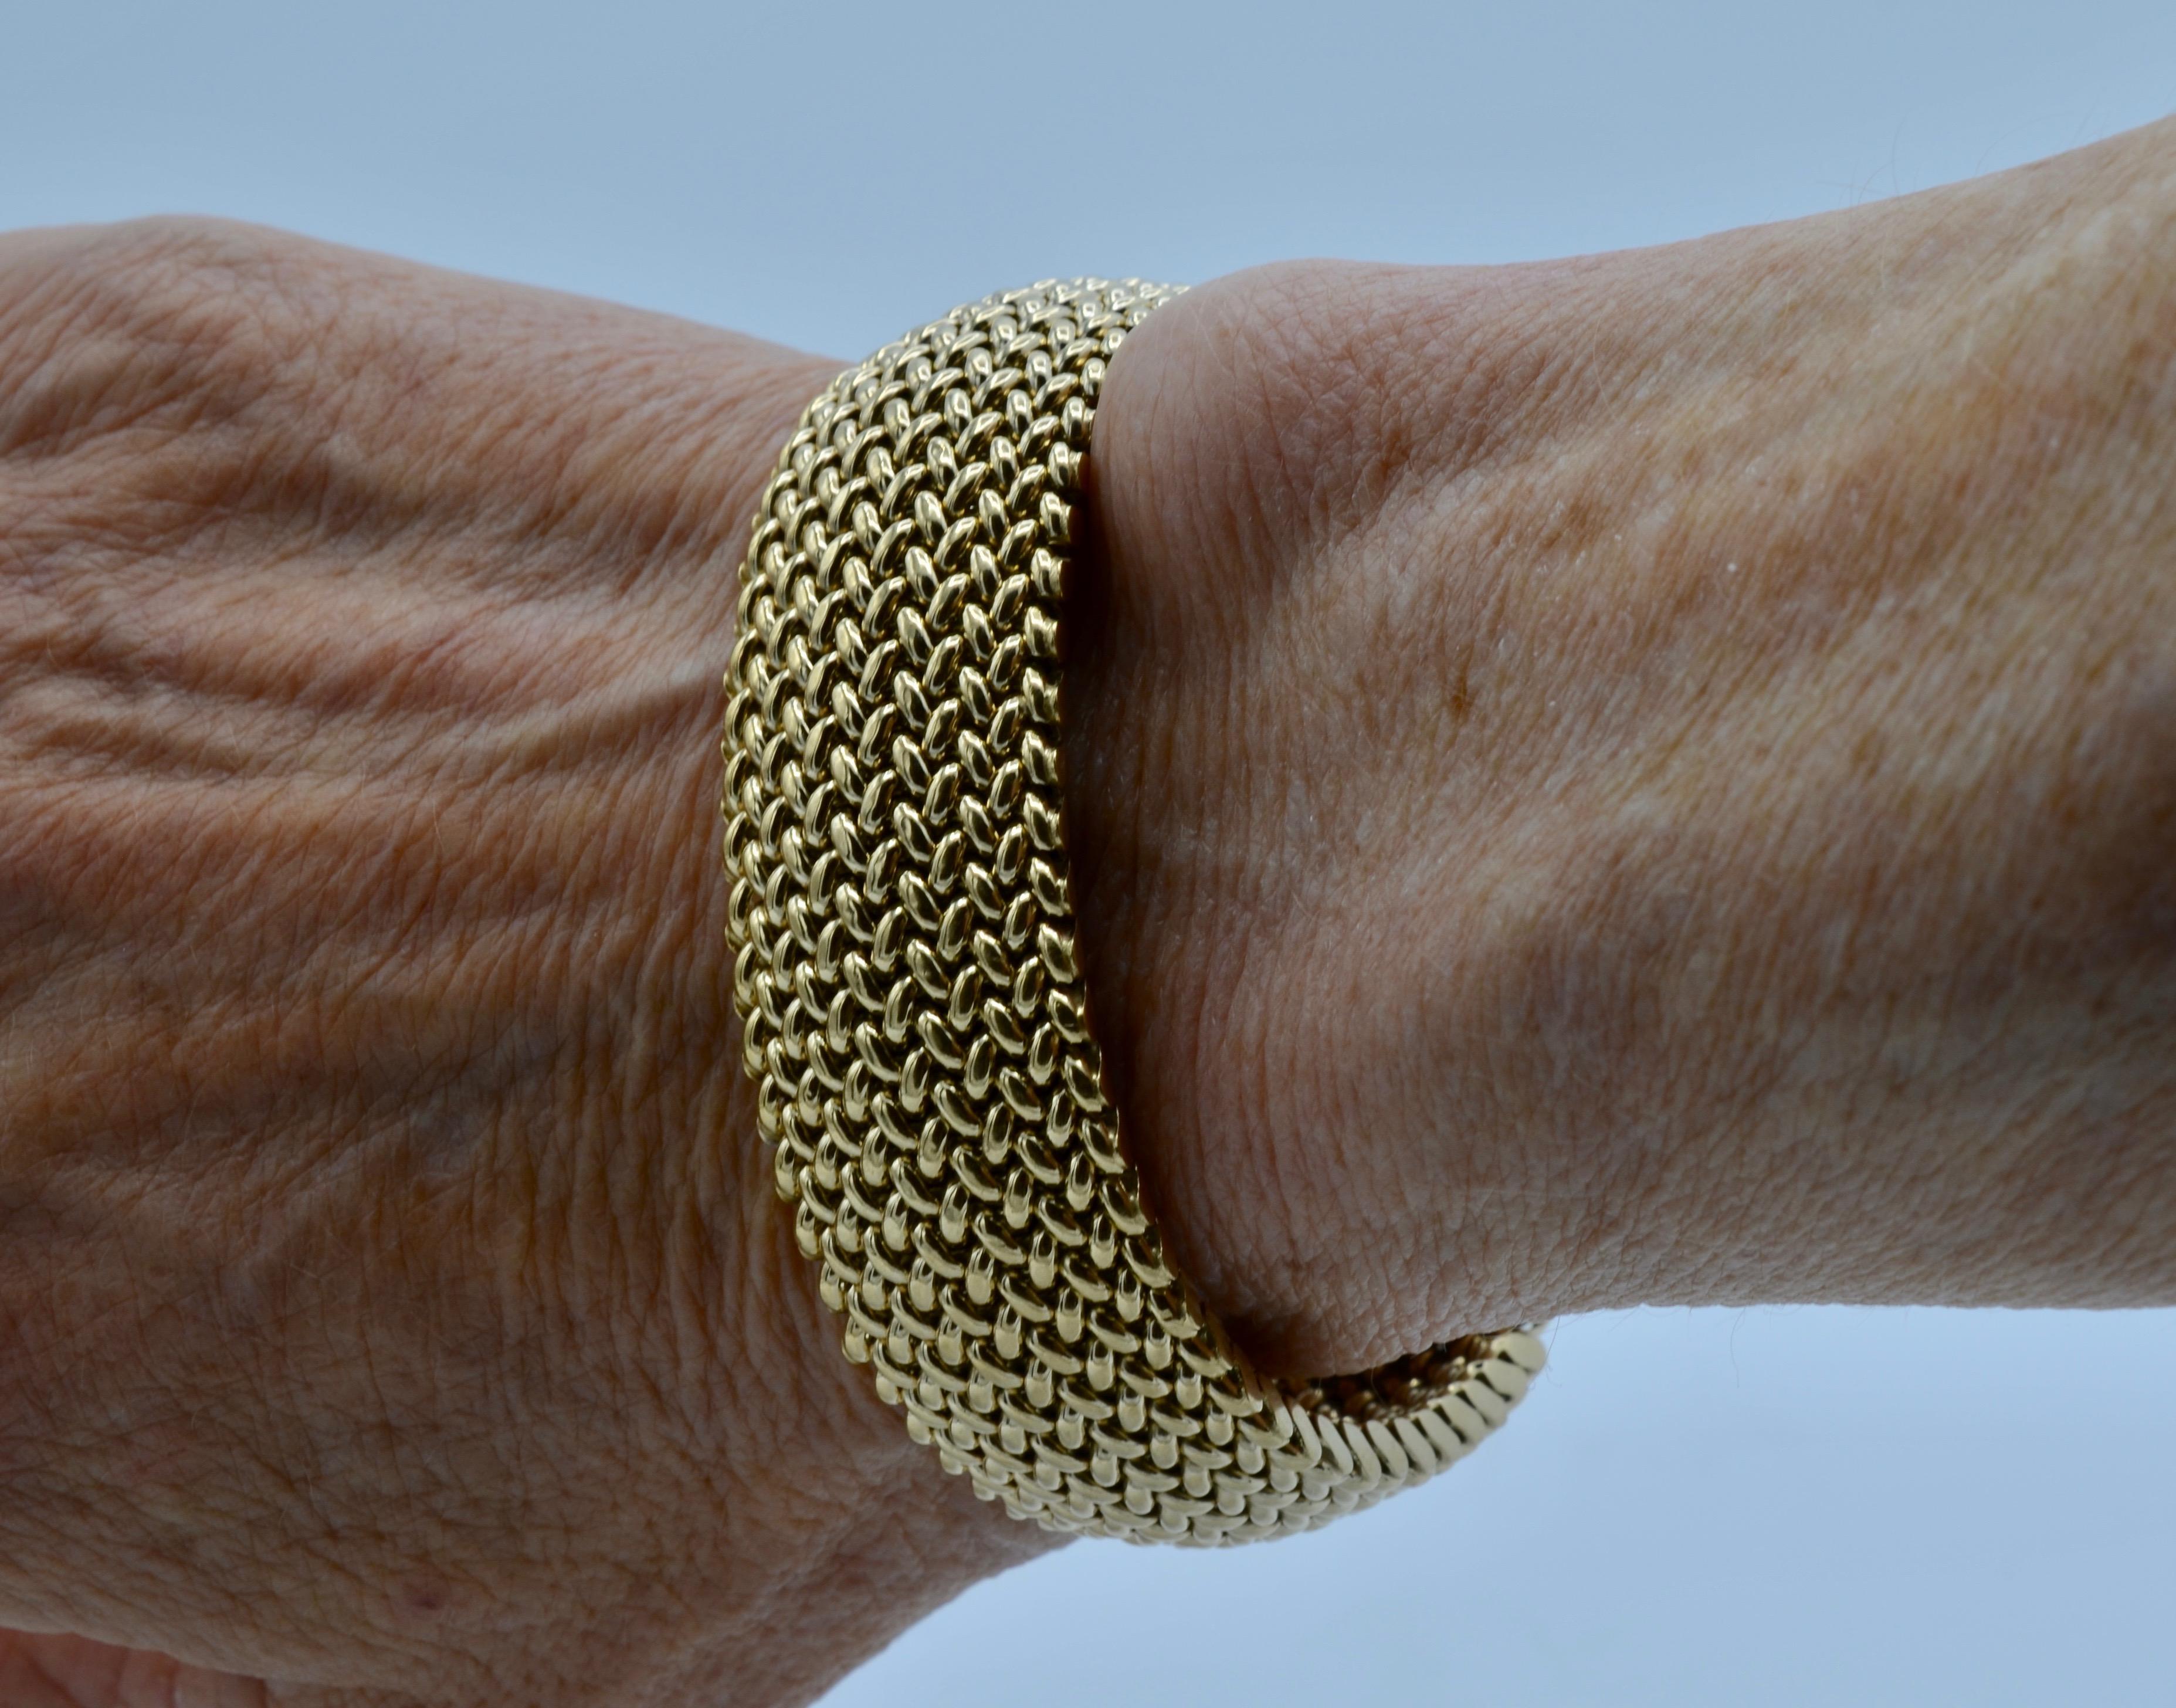 14k gold mesh bracelet